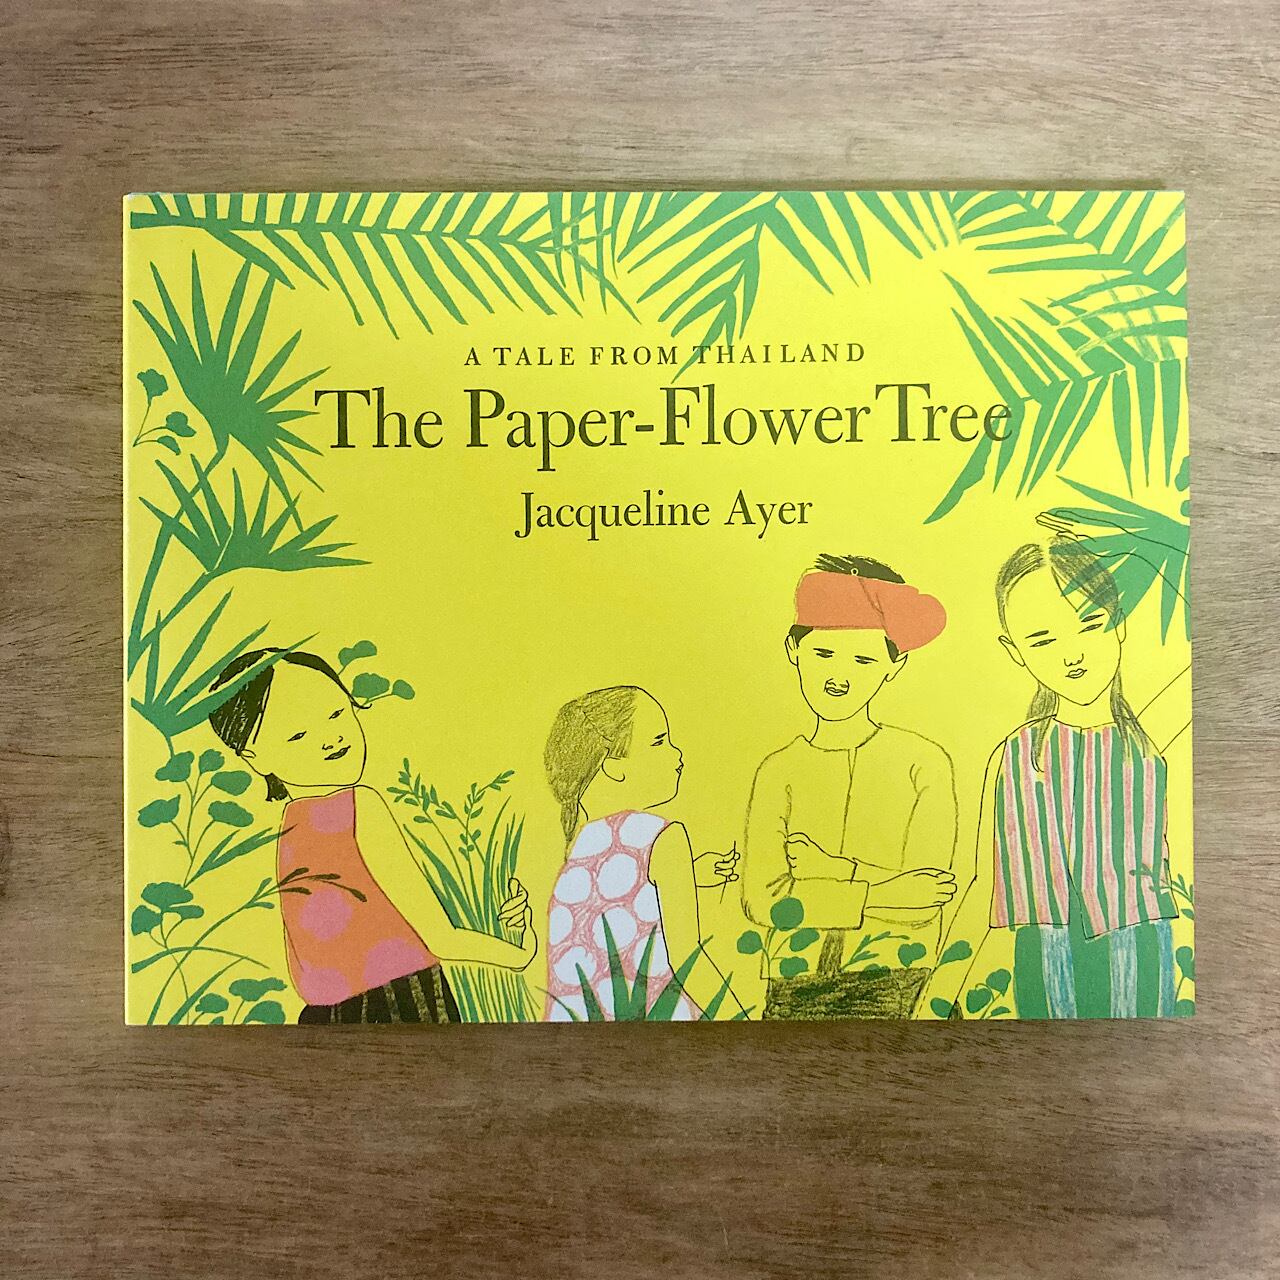 The Paper-Flower Tree | 素敵な洋書の絵本屋さん Read Leaf Books